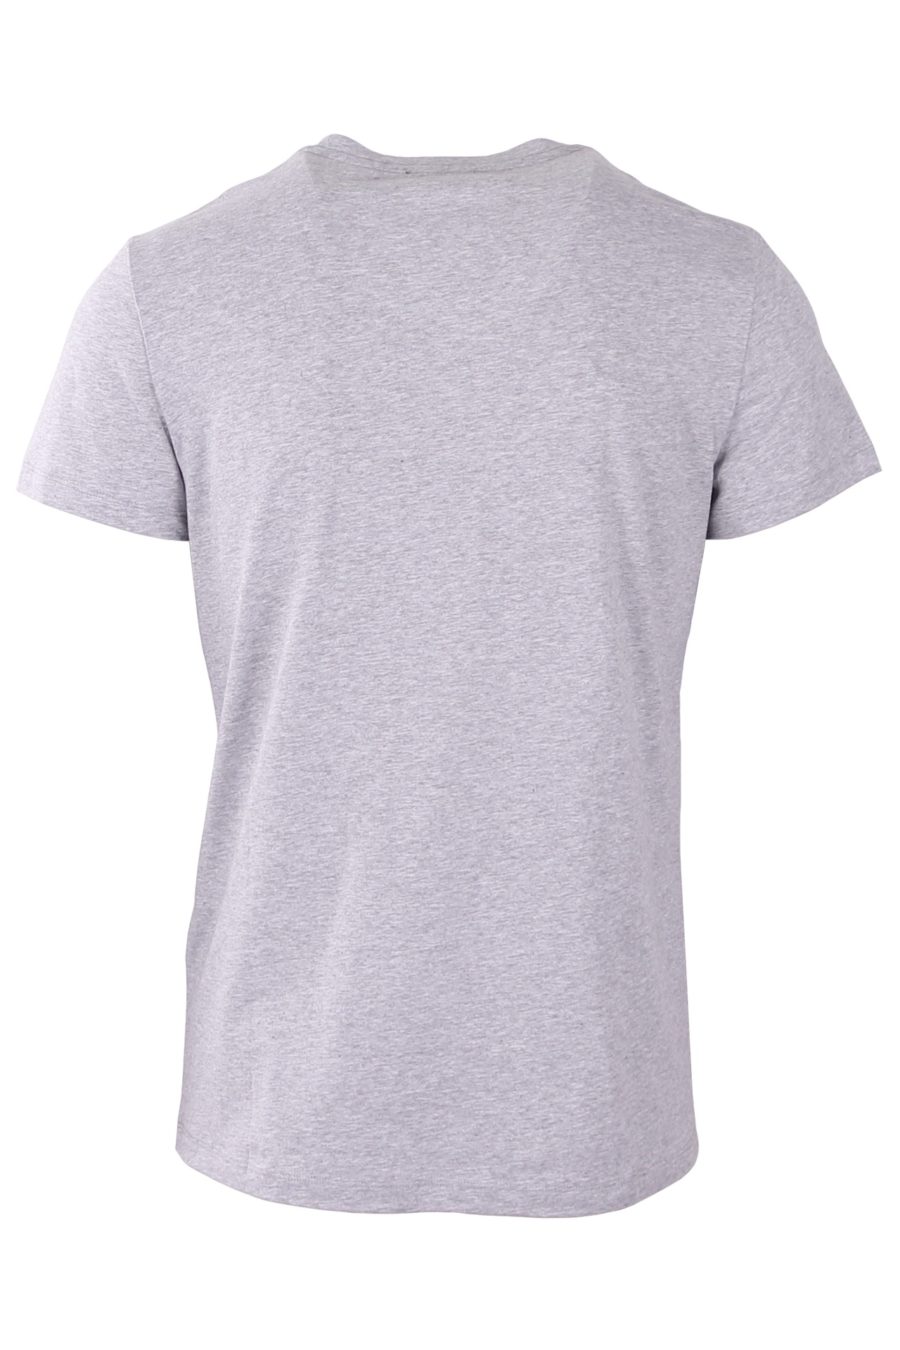 Camiseta Balmain gris con logo afelpado - ec078ff1465138a370c940d82461619a2f355cbd